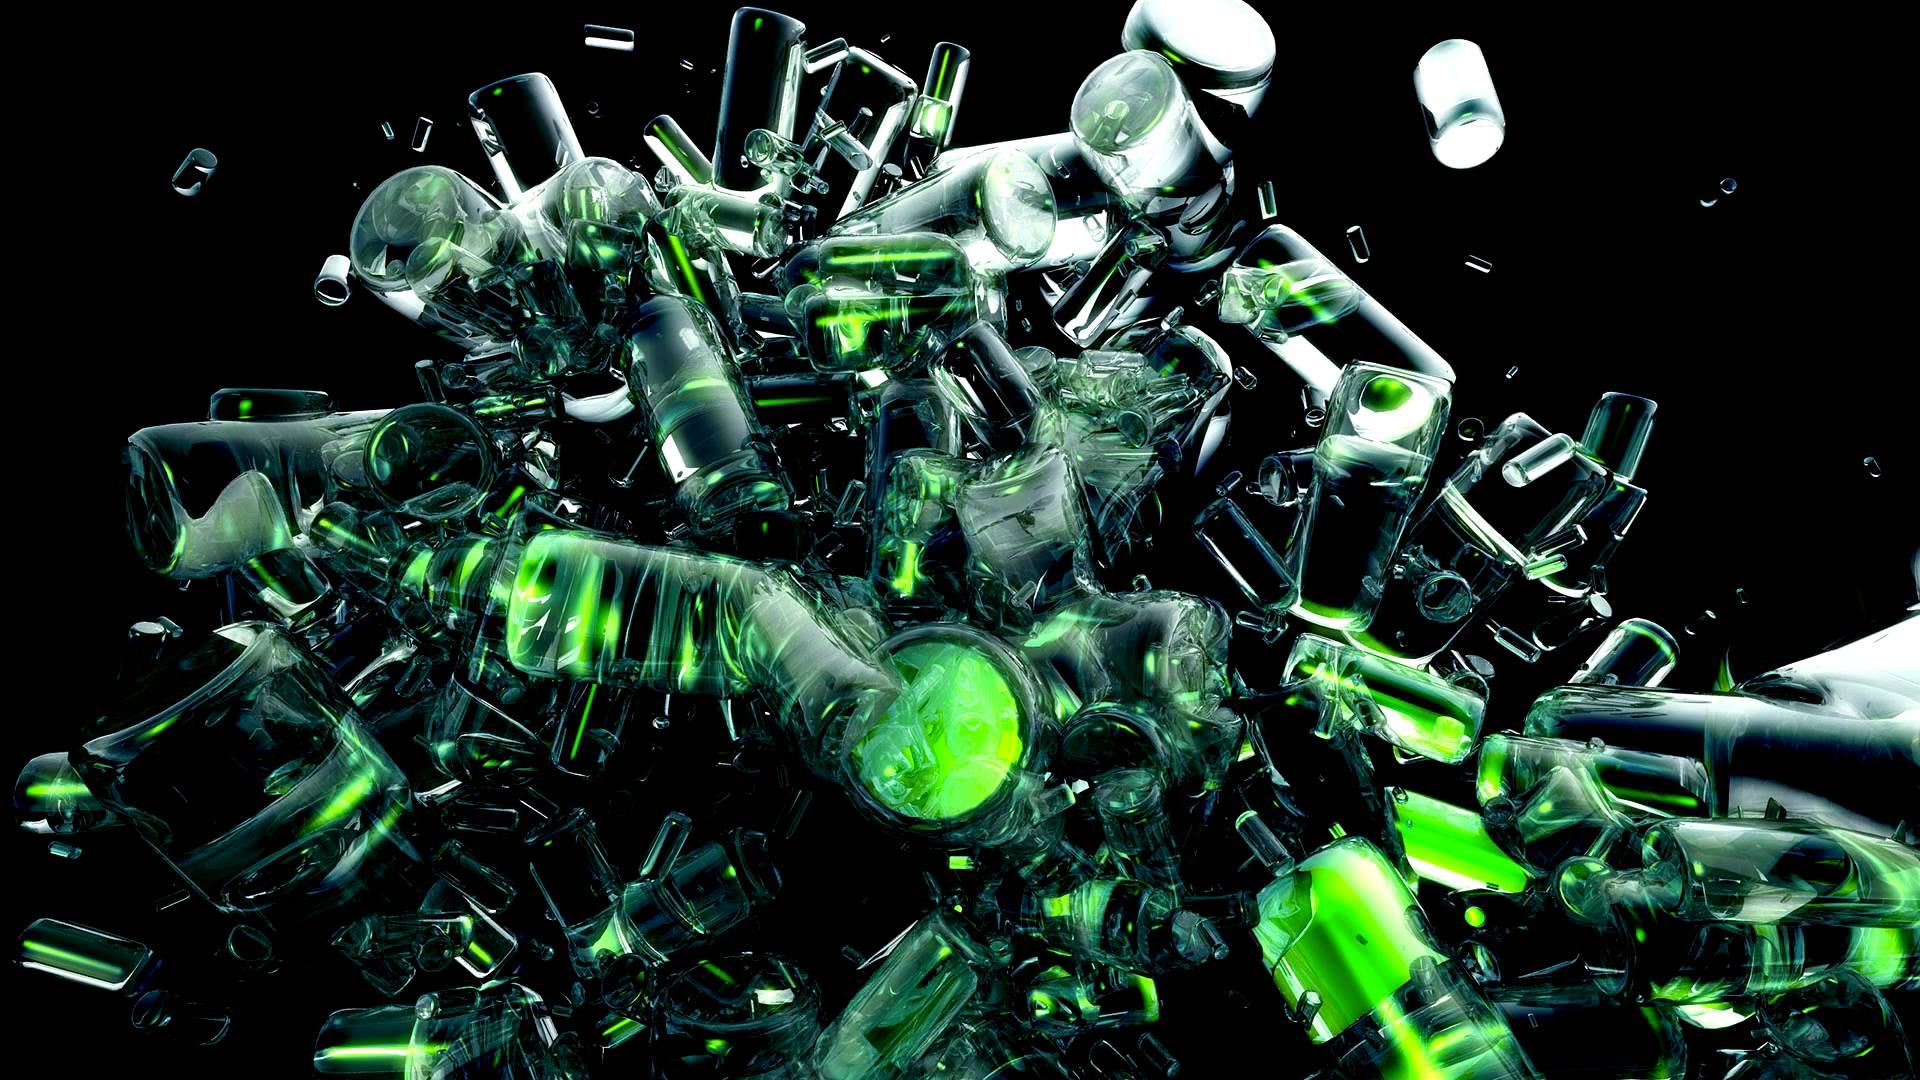 Datsik Wallpaper Page - Breaking Glass Green Background - HD Wallpaper 